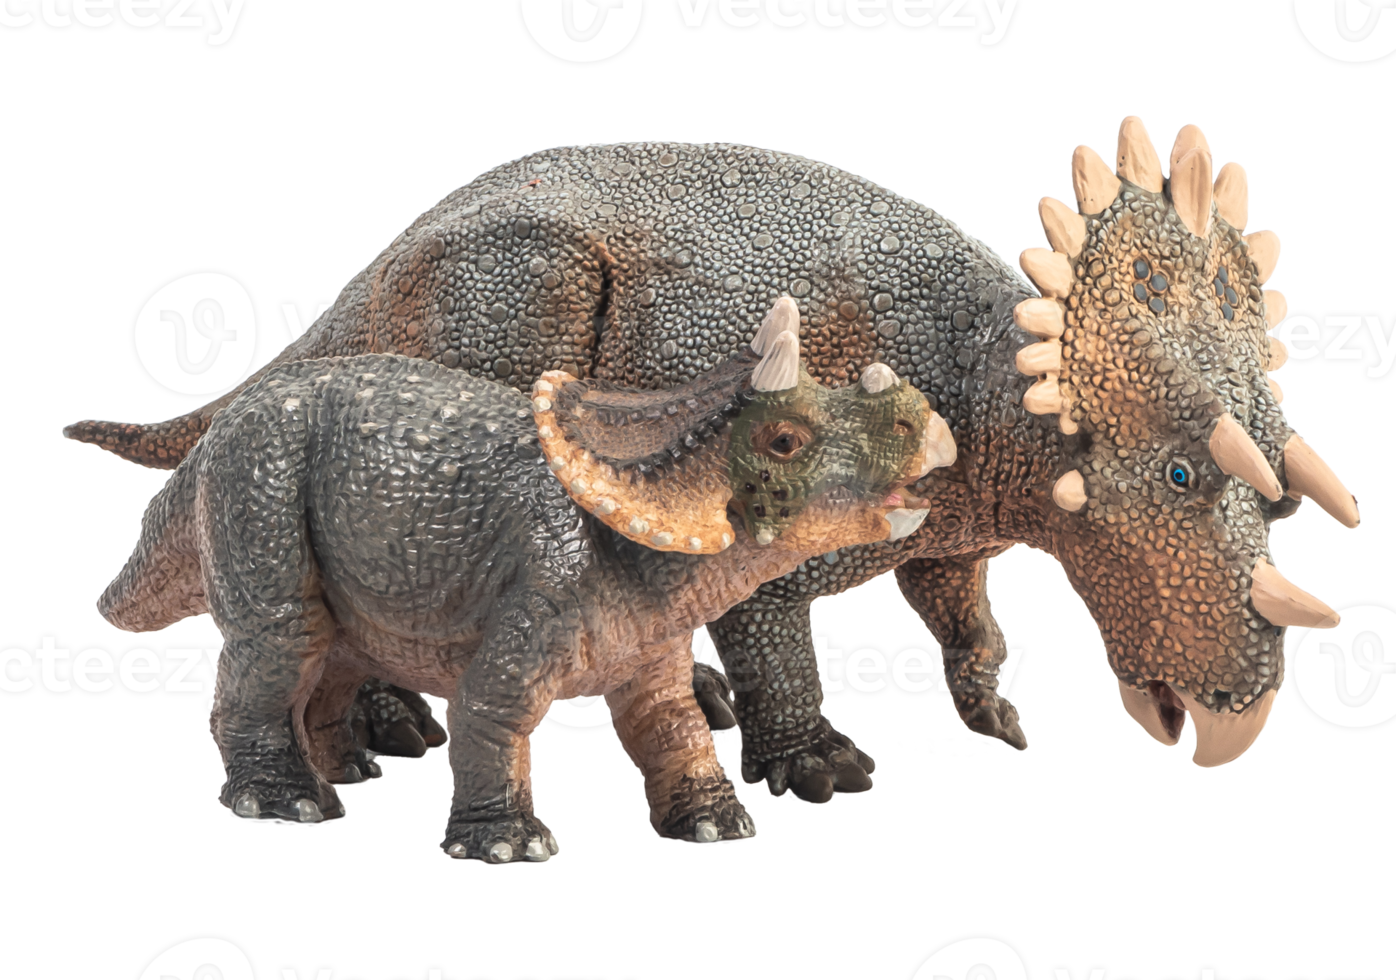 regaliceratops dinosauro su sfondo bianco png